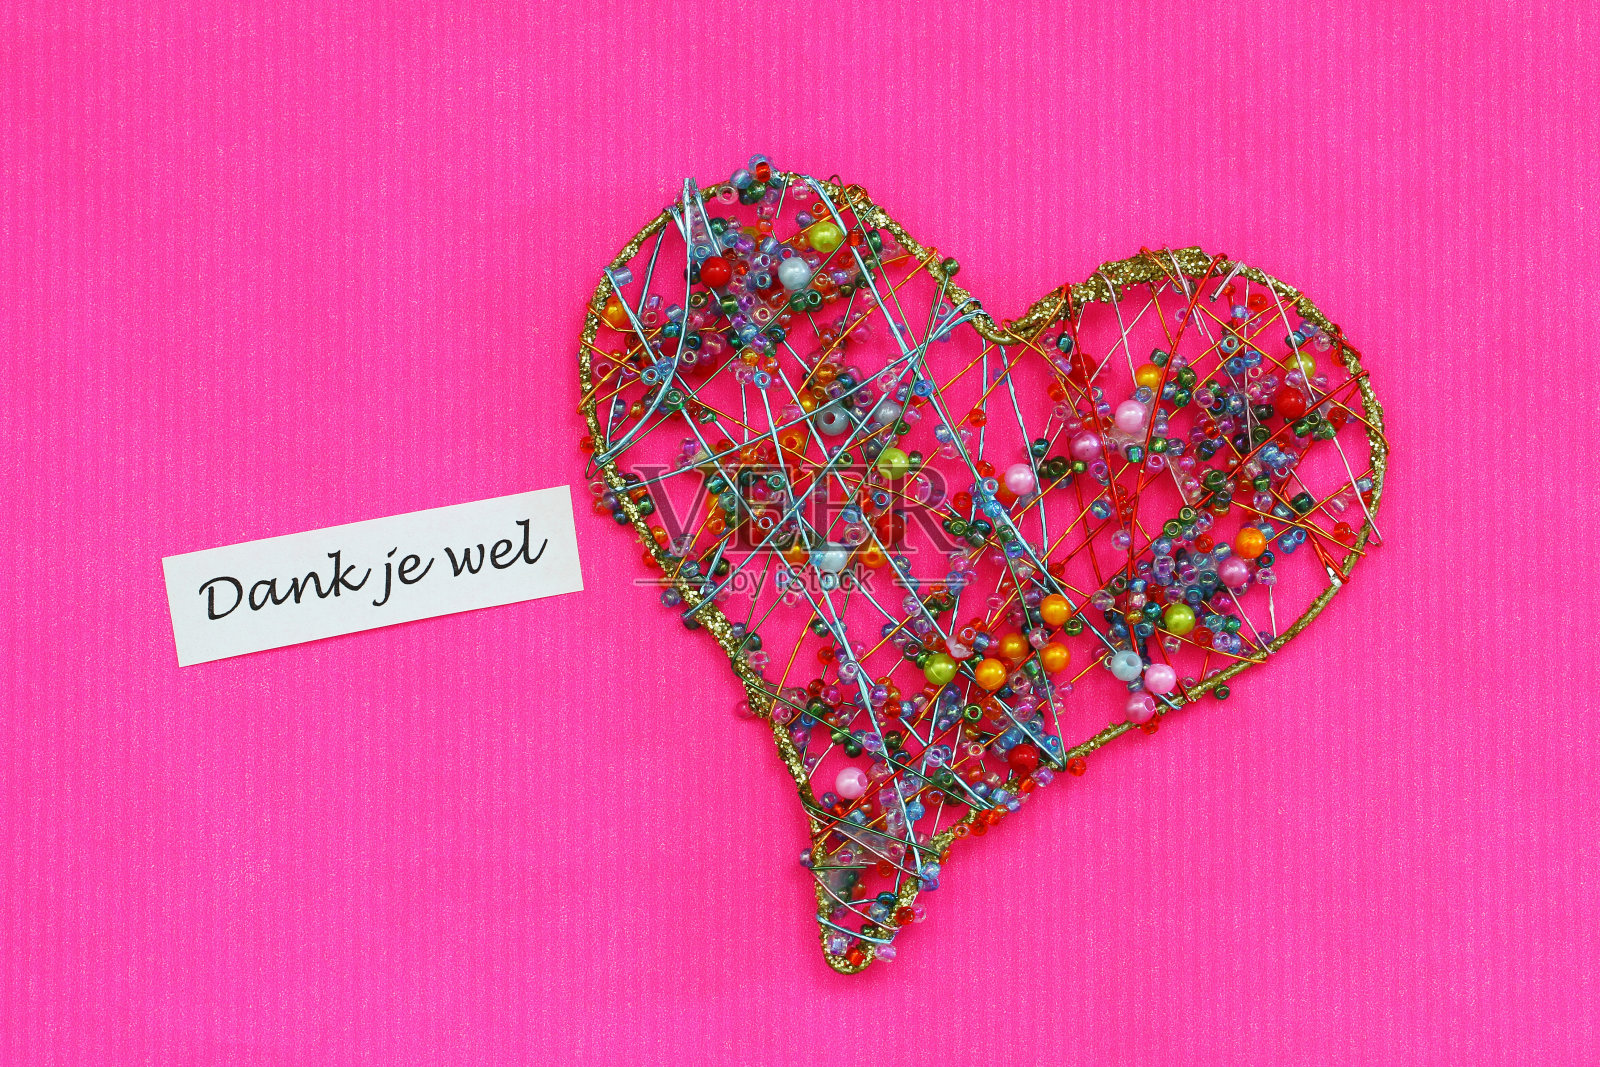 Dank je wel(谢谢你在荷兰语)卡片与心在鲜艳的粉红色表面照片摄影图片